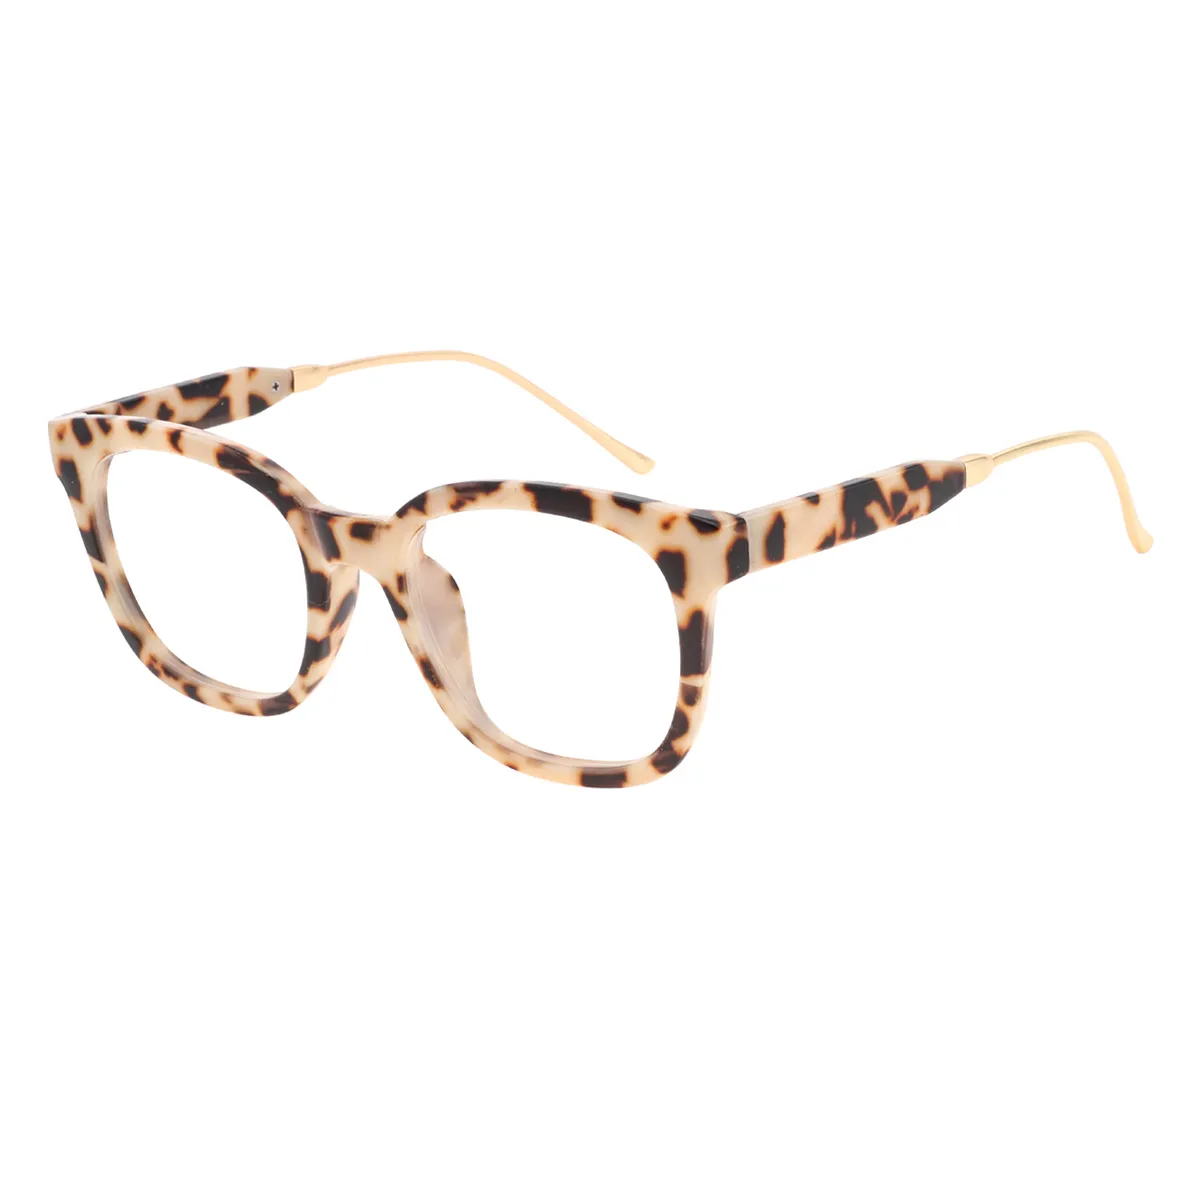 Steve - Square Leopard Glasses for Women